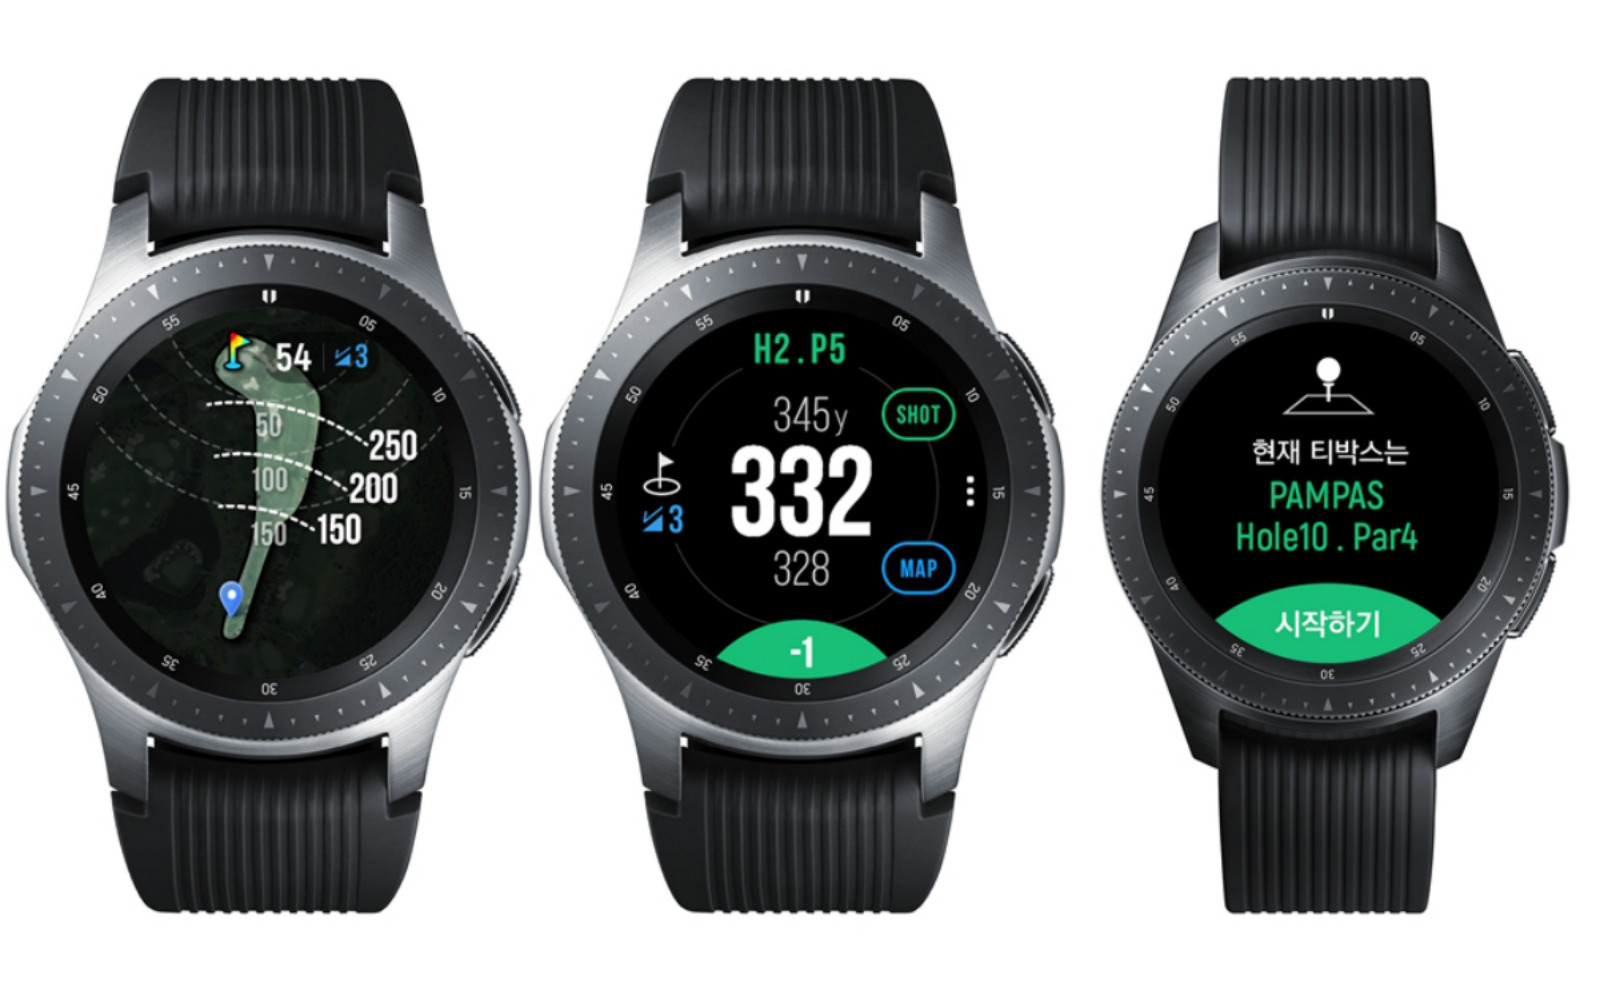 Samsung Galaxy Watch Golf Edition: tích hợp dữ liệu 60,000 sân gôn, giá từ 350$